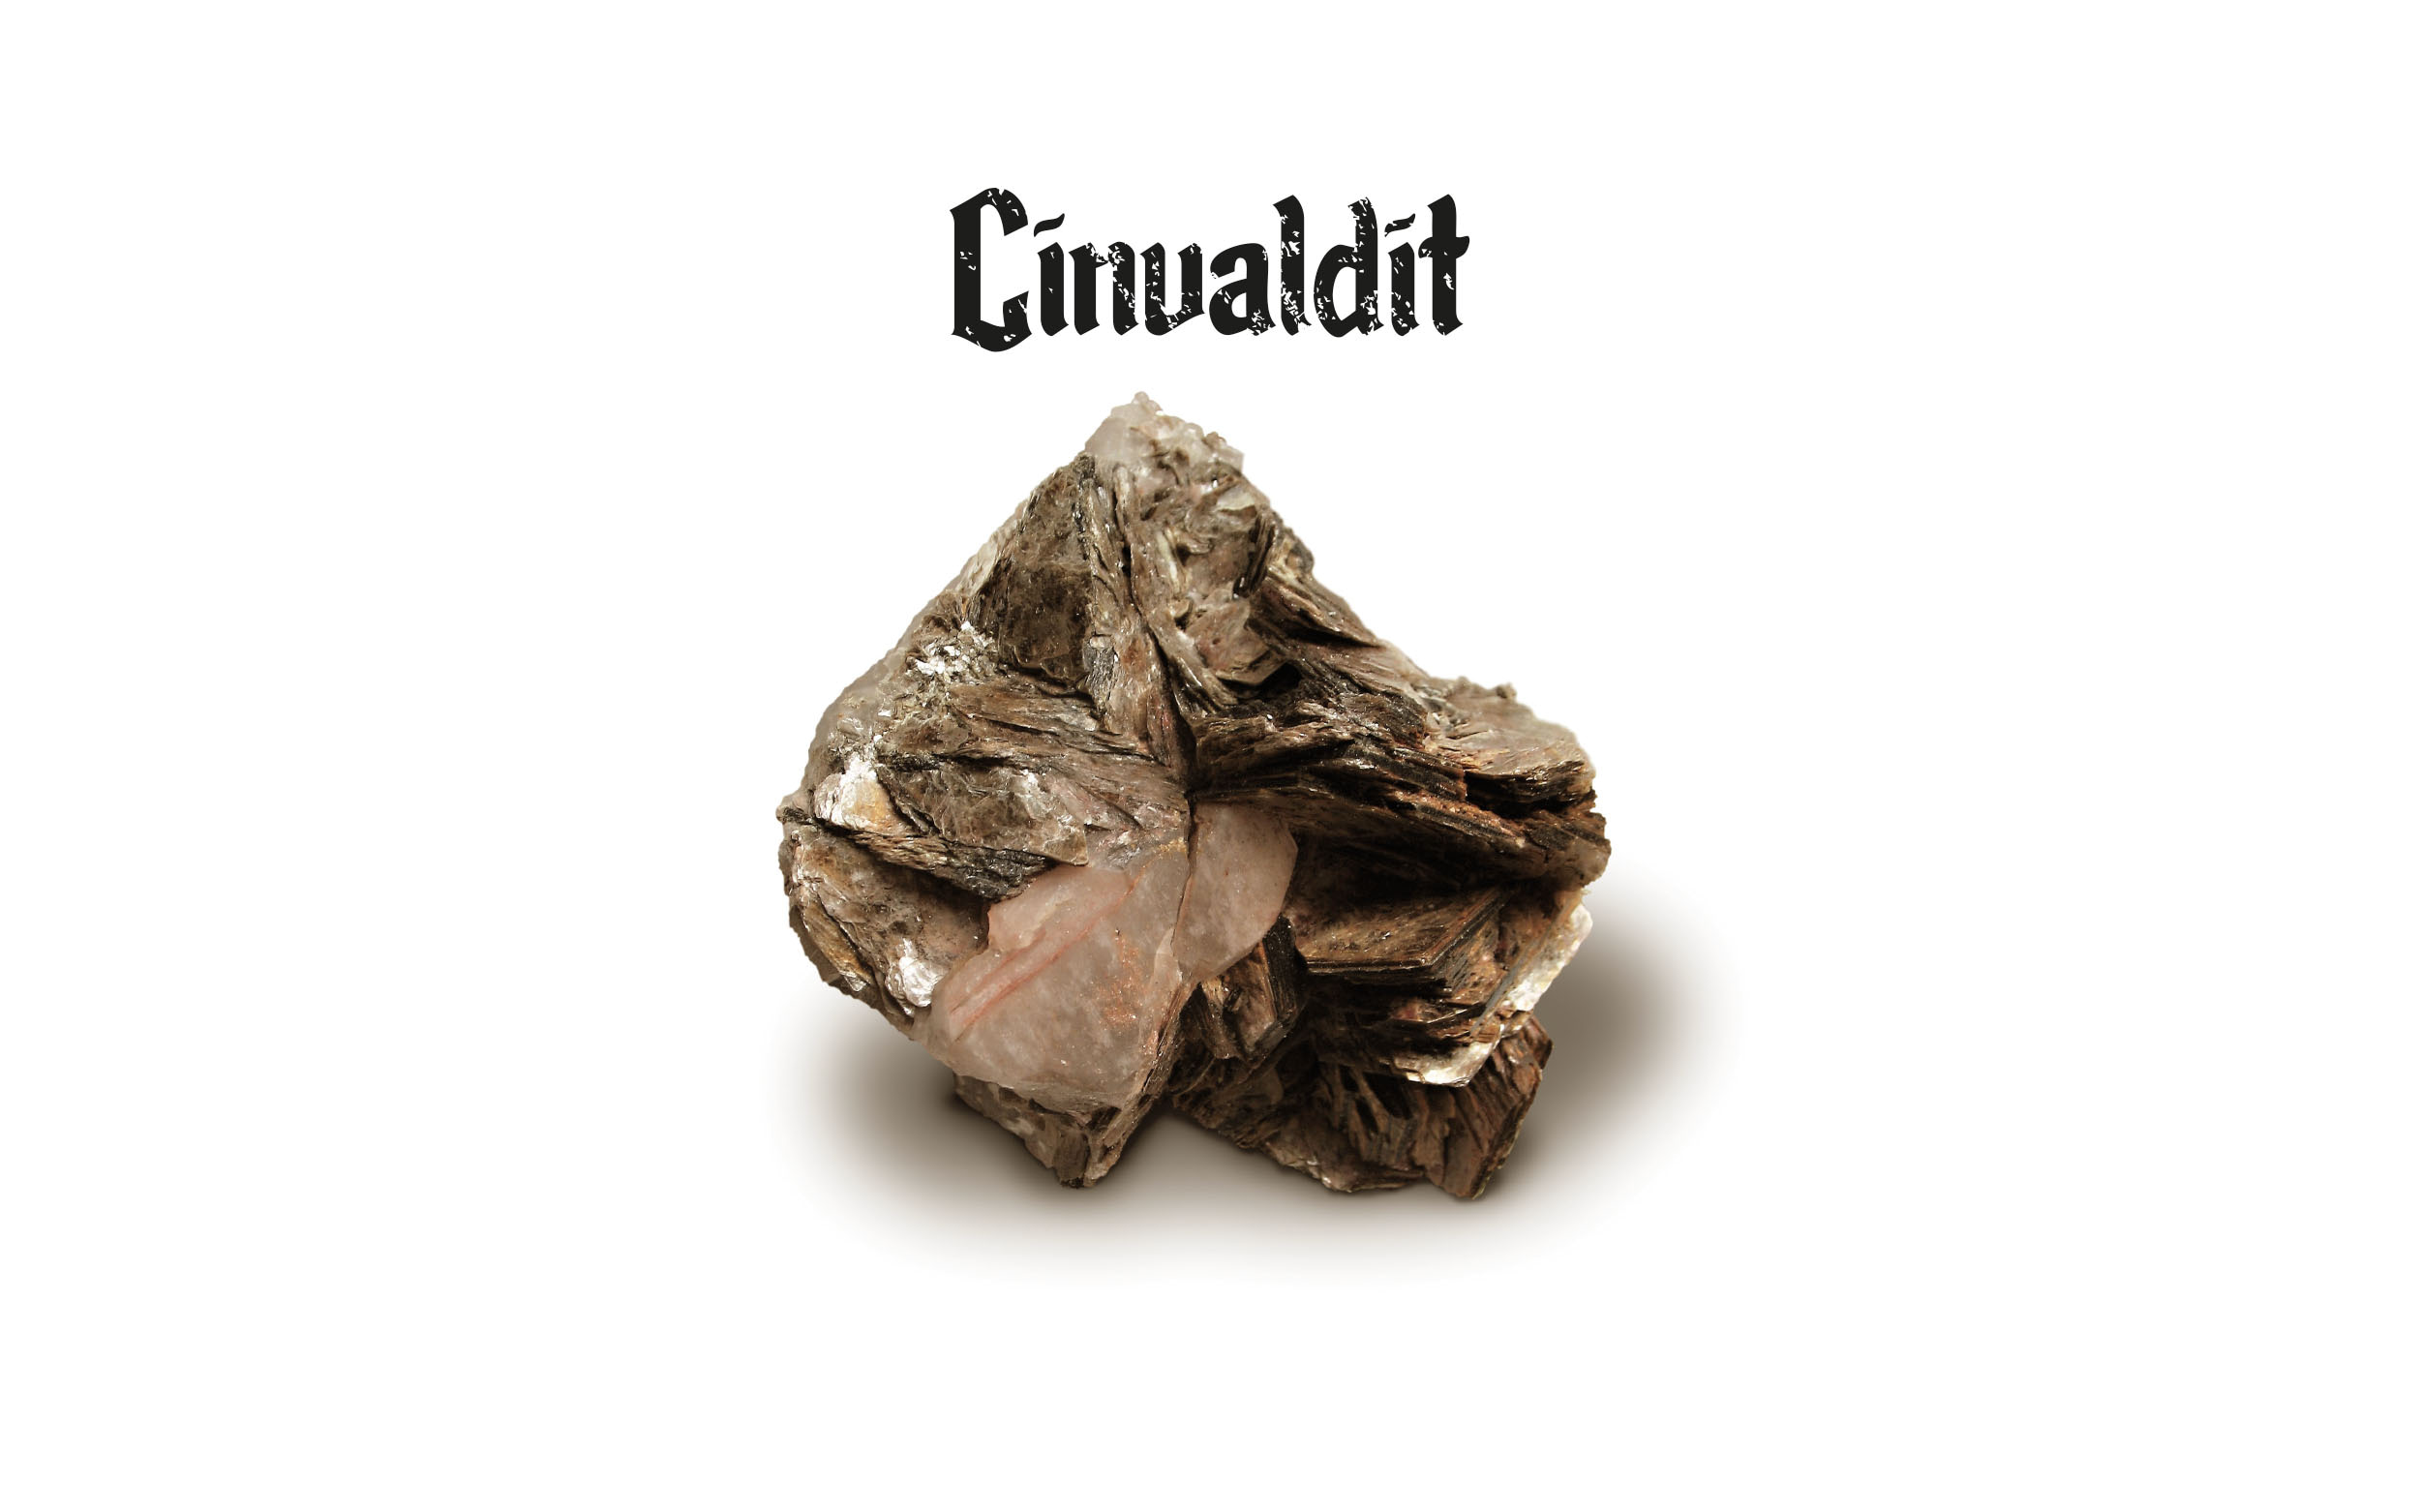 KLiFeAl(AlSi3)O10(OH,F)2

Cinvaldit (lithná slída, zinnwaldit) je stříbřitě šedý minerál, který se vyskytuje v ložiscích cínowolframových rud. Nejznámější naleziště je Cínovec/Zinnwald v česko-německém pohraničí na Teplicku. Jinde v Evropě se vyskytuje v hrabství Cornwall na jihozápadě Anglie. Jde o měkčí slídu s vysokým podílem křemíku, 
železa, hliníku, draslíku a fluoru. Lithia obsahuje relativně málo, do 1,6 procenta.